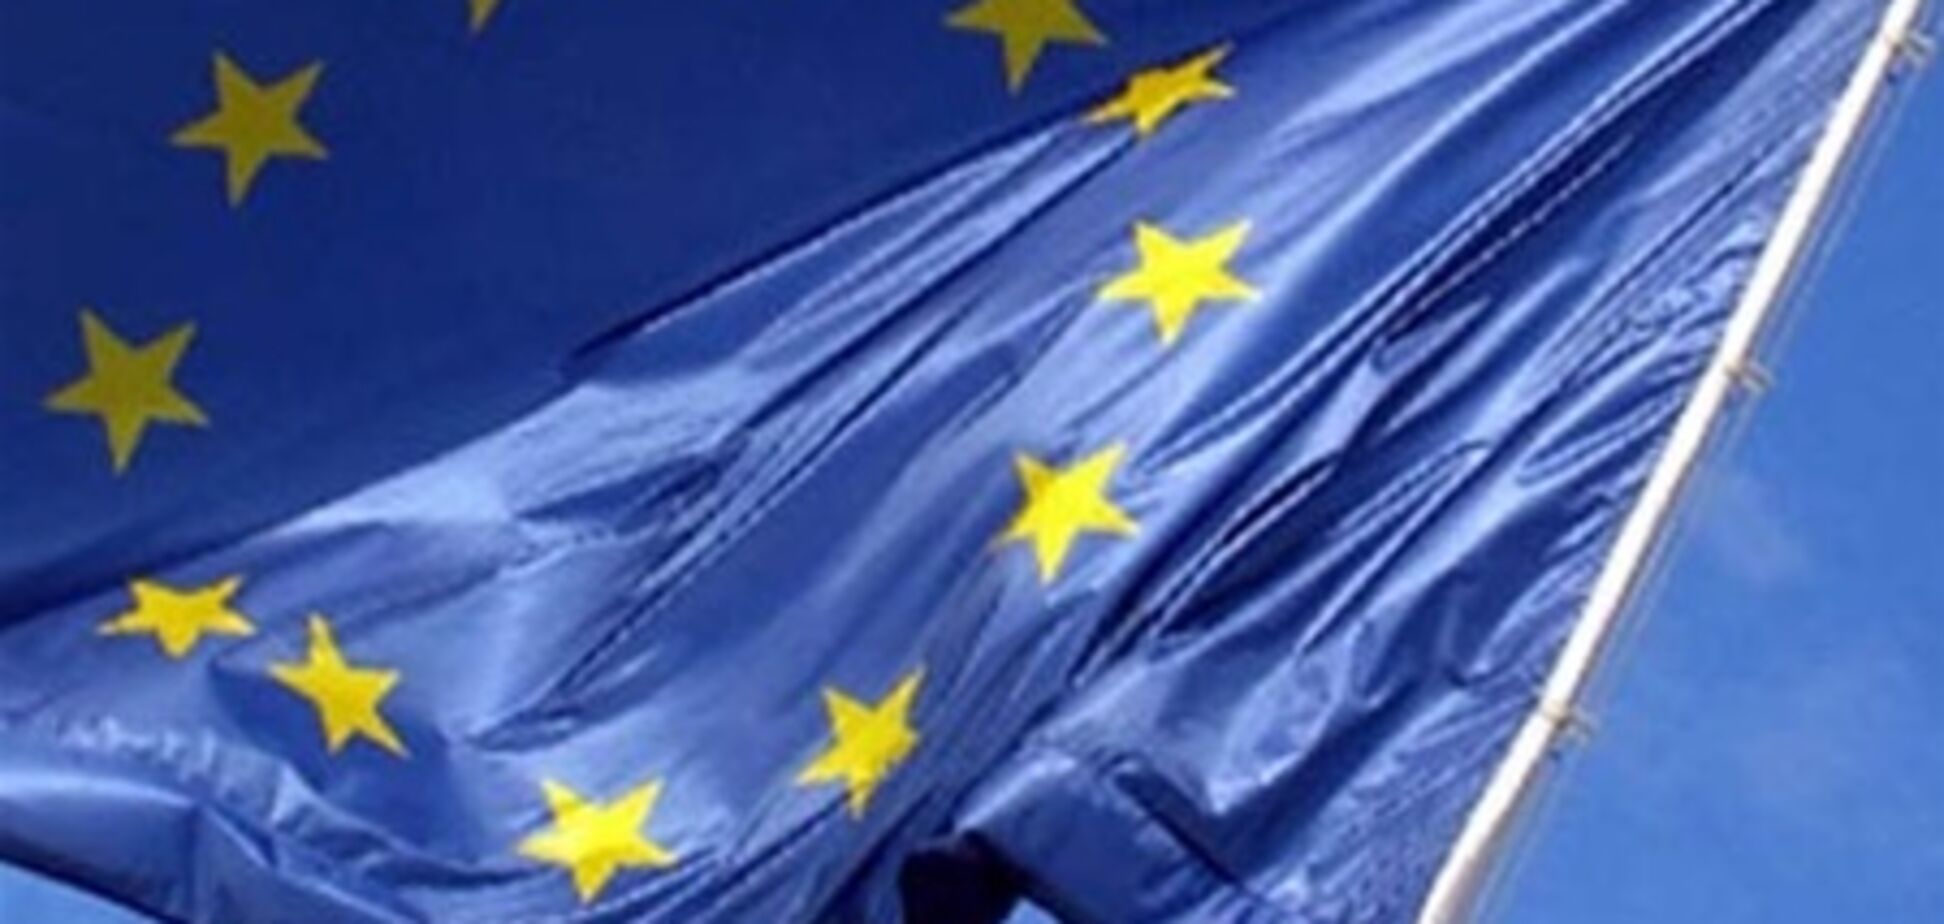 ЕС: имплементация соглашения с Украиной может длиться 10 лет